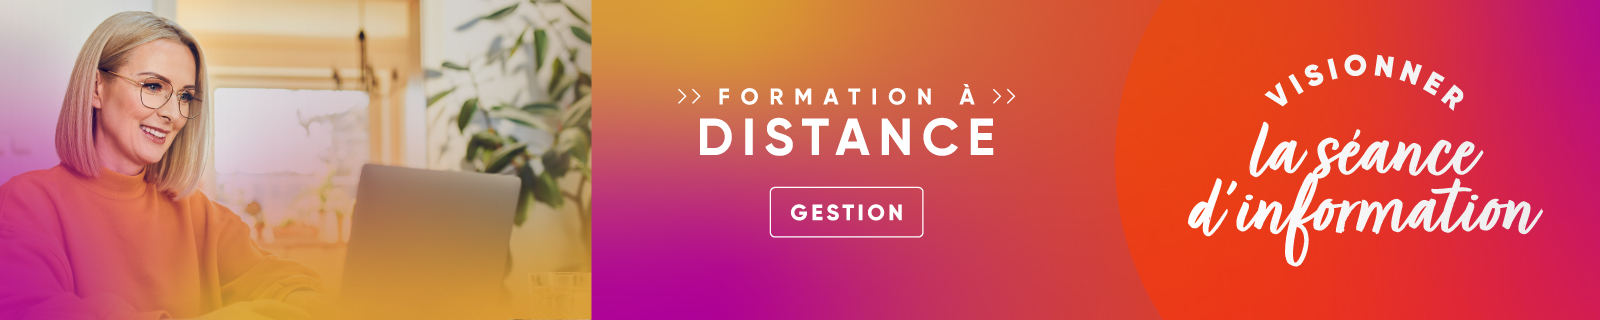 Séance d'information - Formation à distance - Gestion